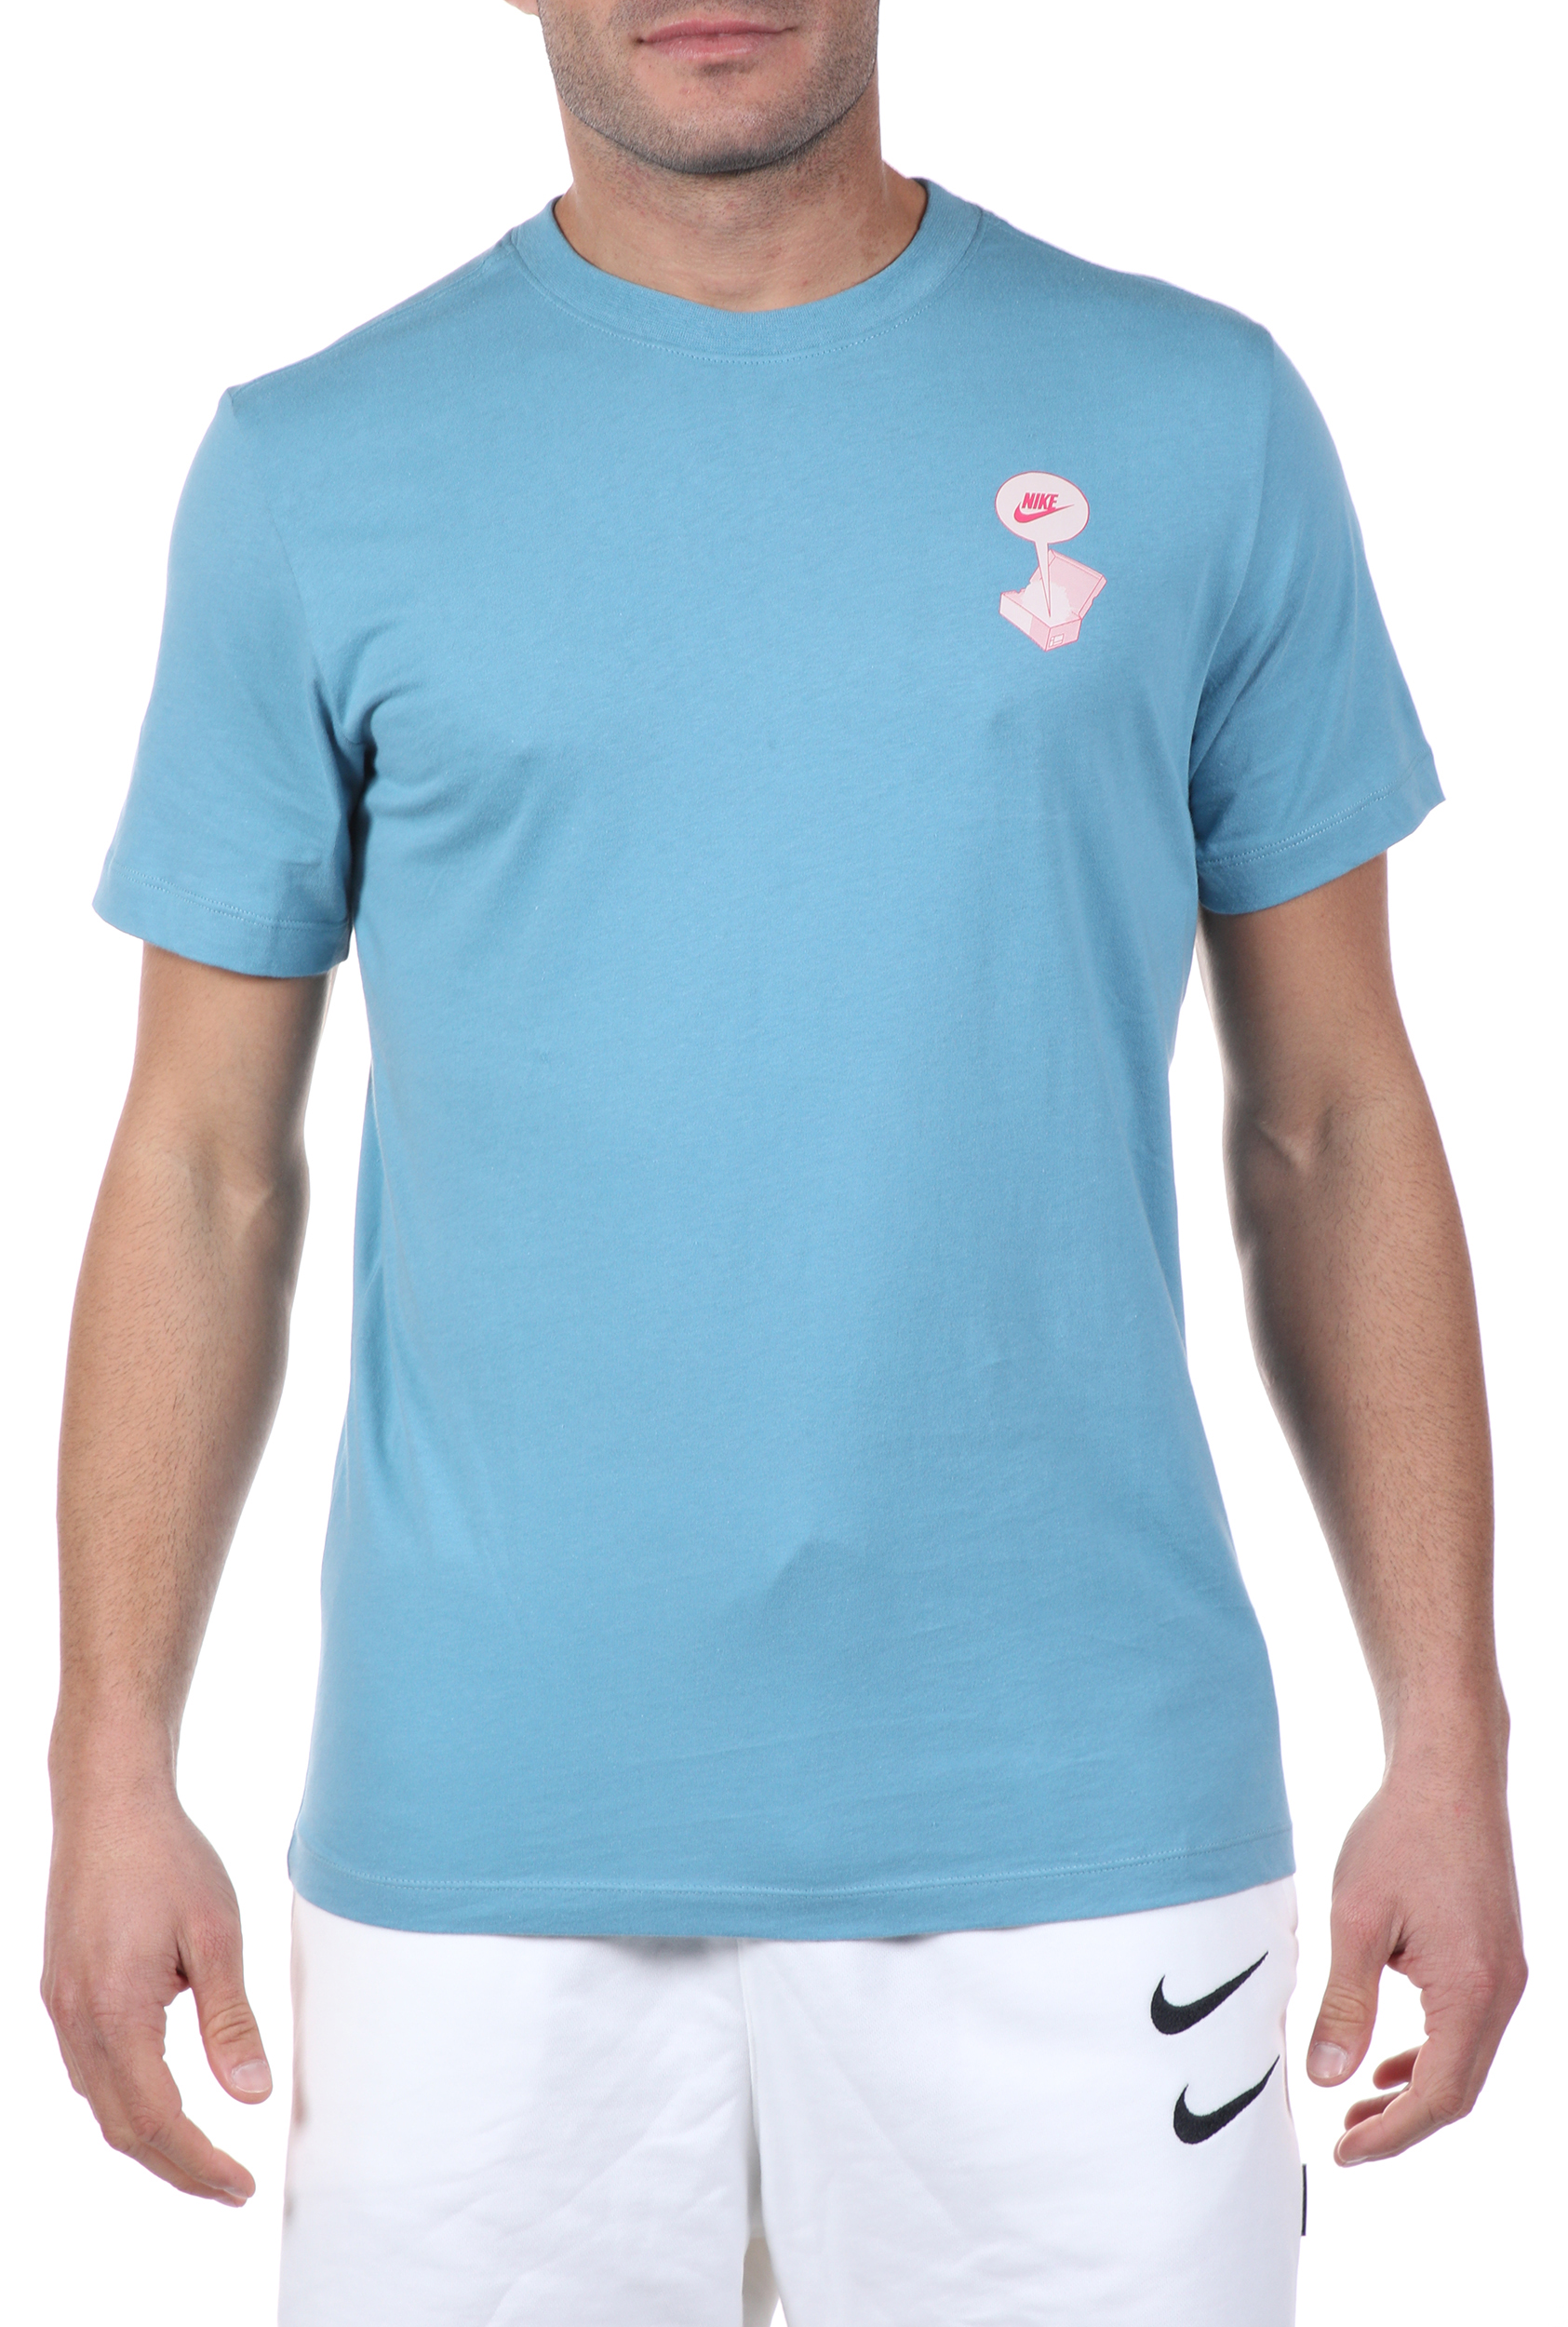 Ανδρικά/Ρούχα/Αθλητικά/T-shirt NIKE - Ανδρικό t-shirt NIKE NSW TEE FTWR DSTRD BM μπλε